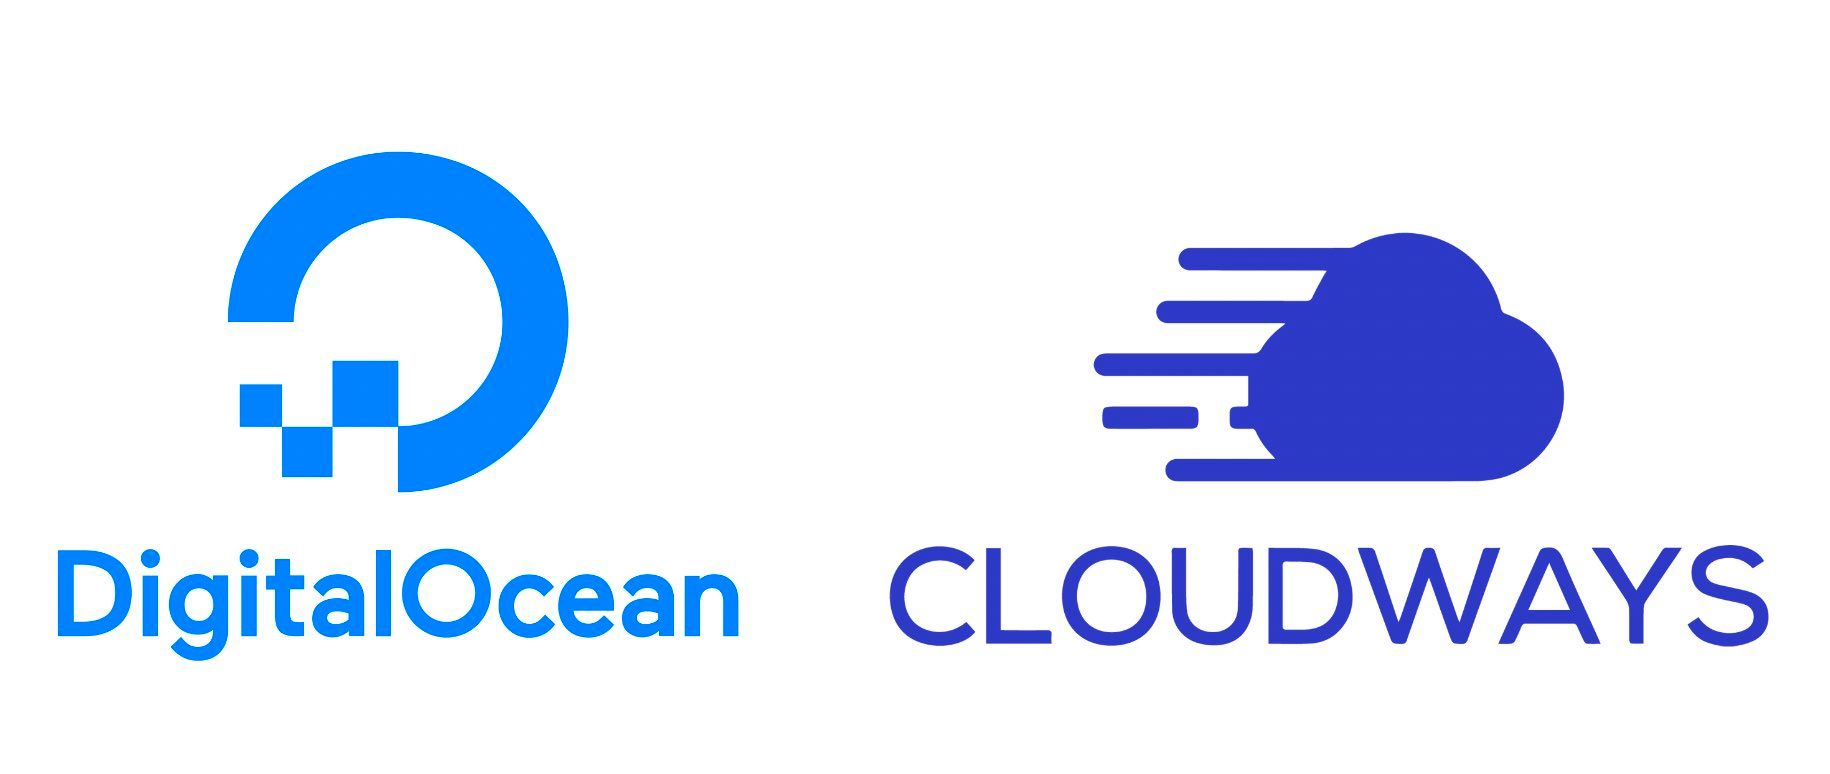 DititalOcean Cloudways logos